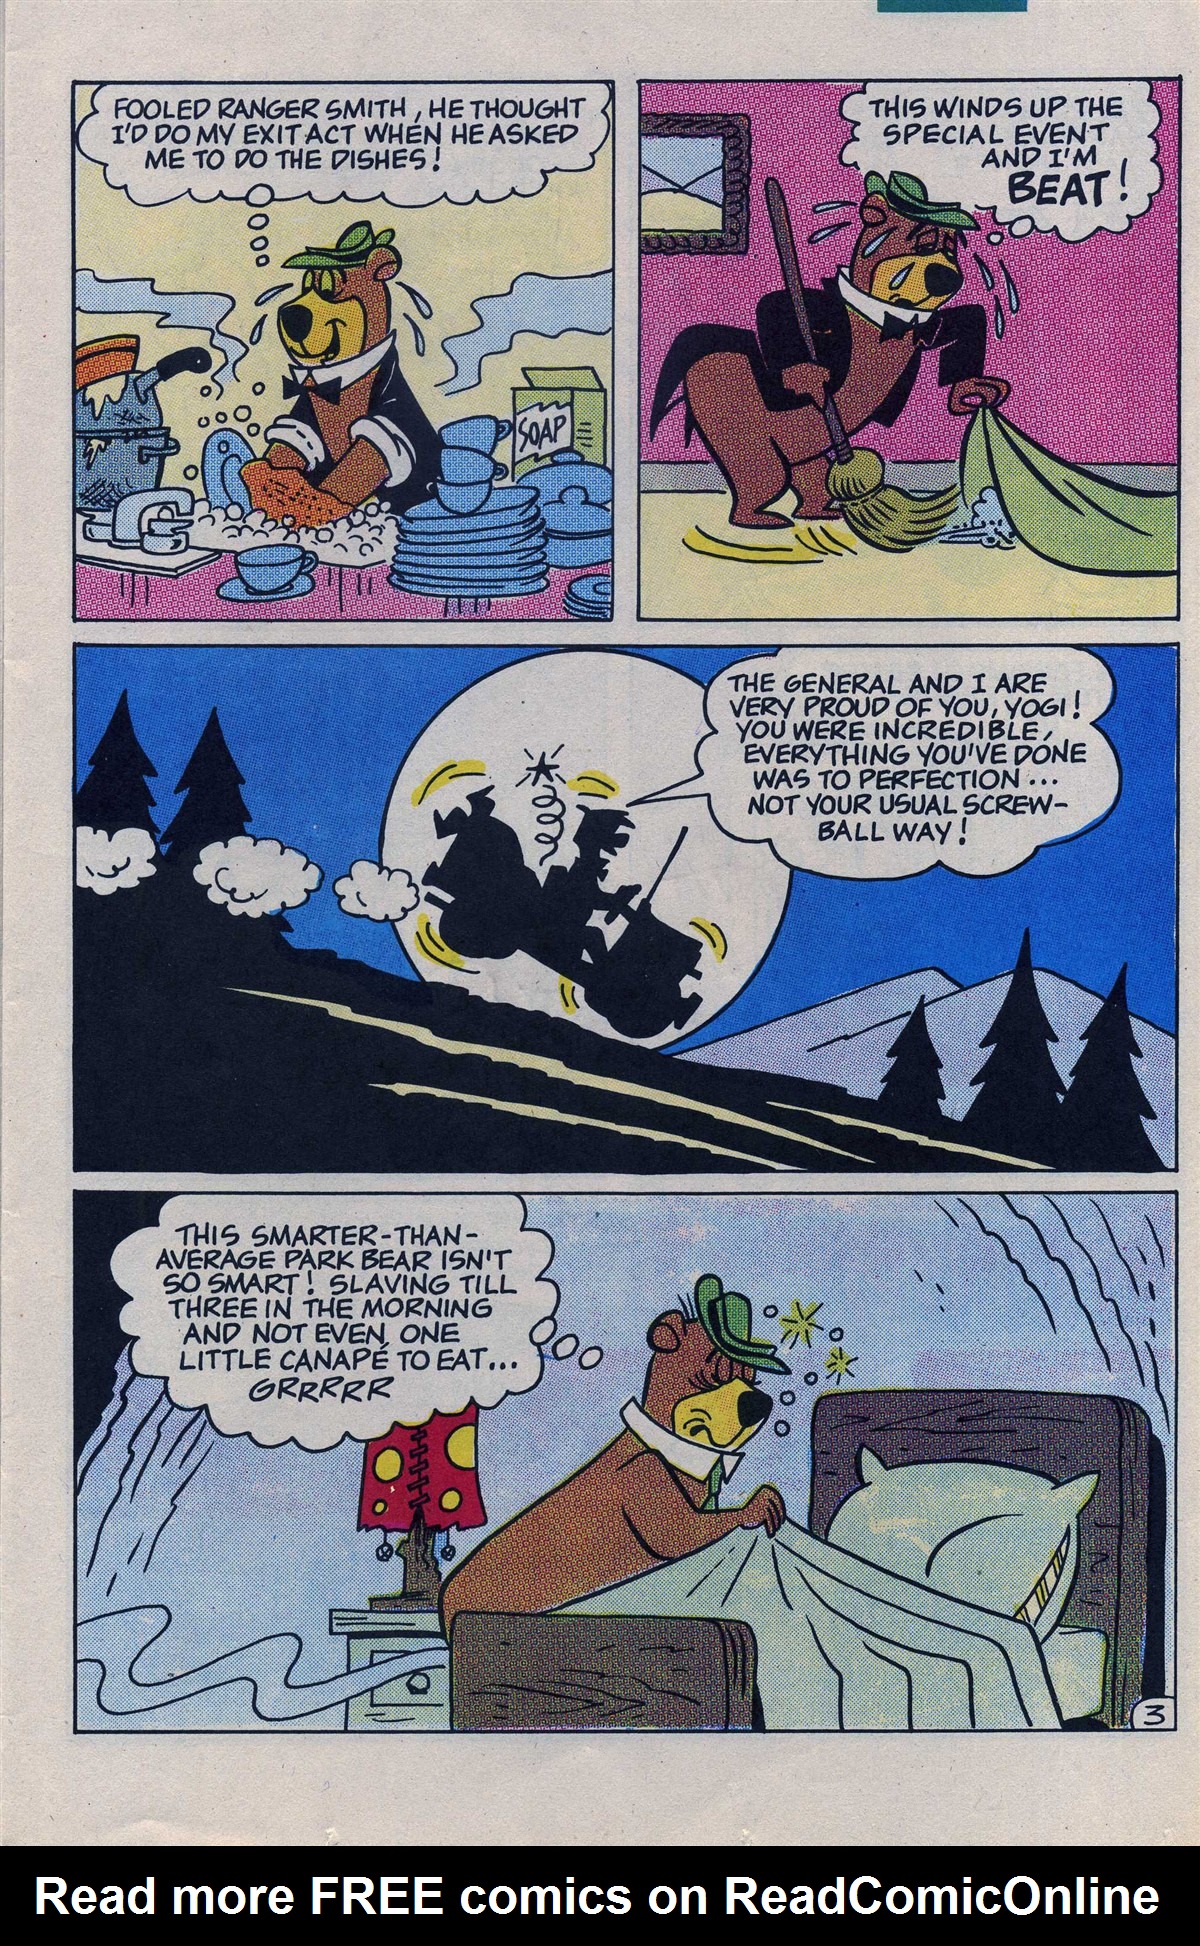 Yogi Bear 1992 Issue 1 Read Yogi Bear 1992 Issue 1 Comic Online In